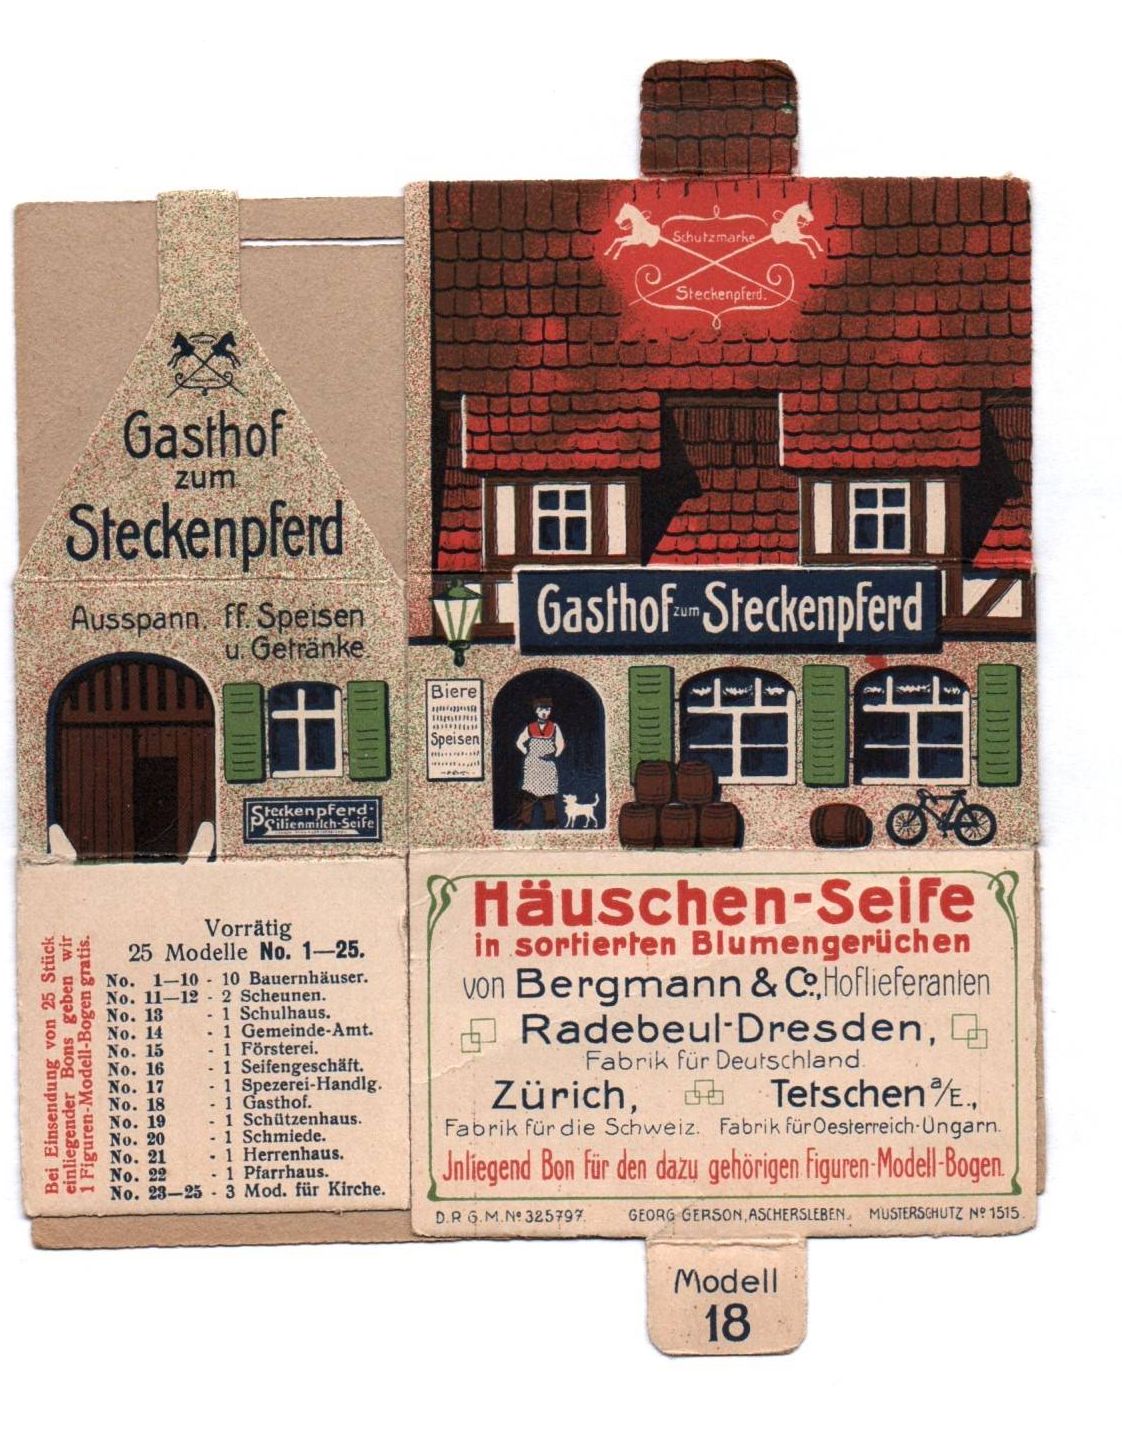 Steckenpferd Seife  Radebeul Dresden Faltmodell Gasthof Werbung Reklame